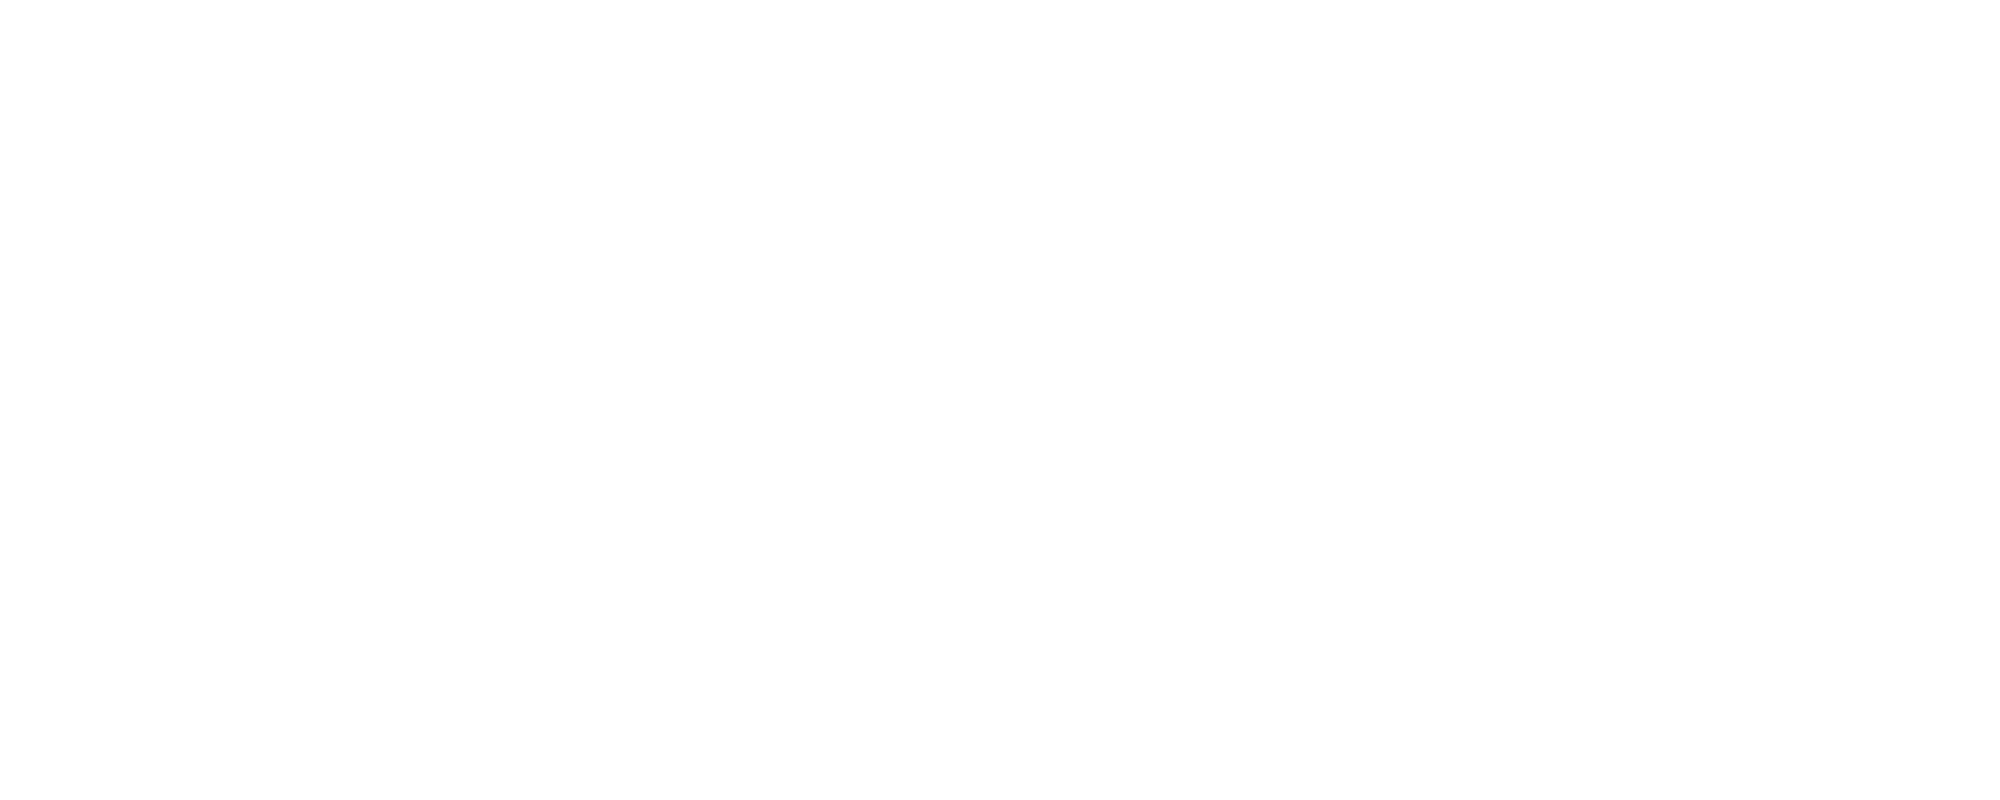 WallemShop